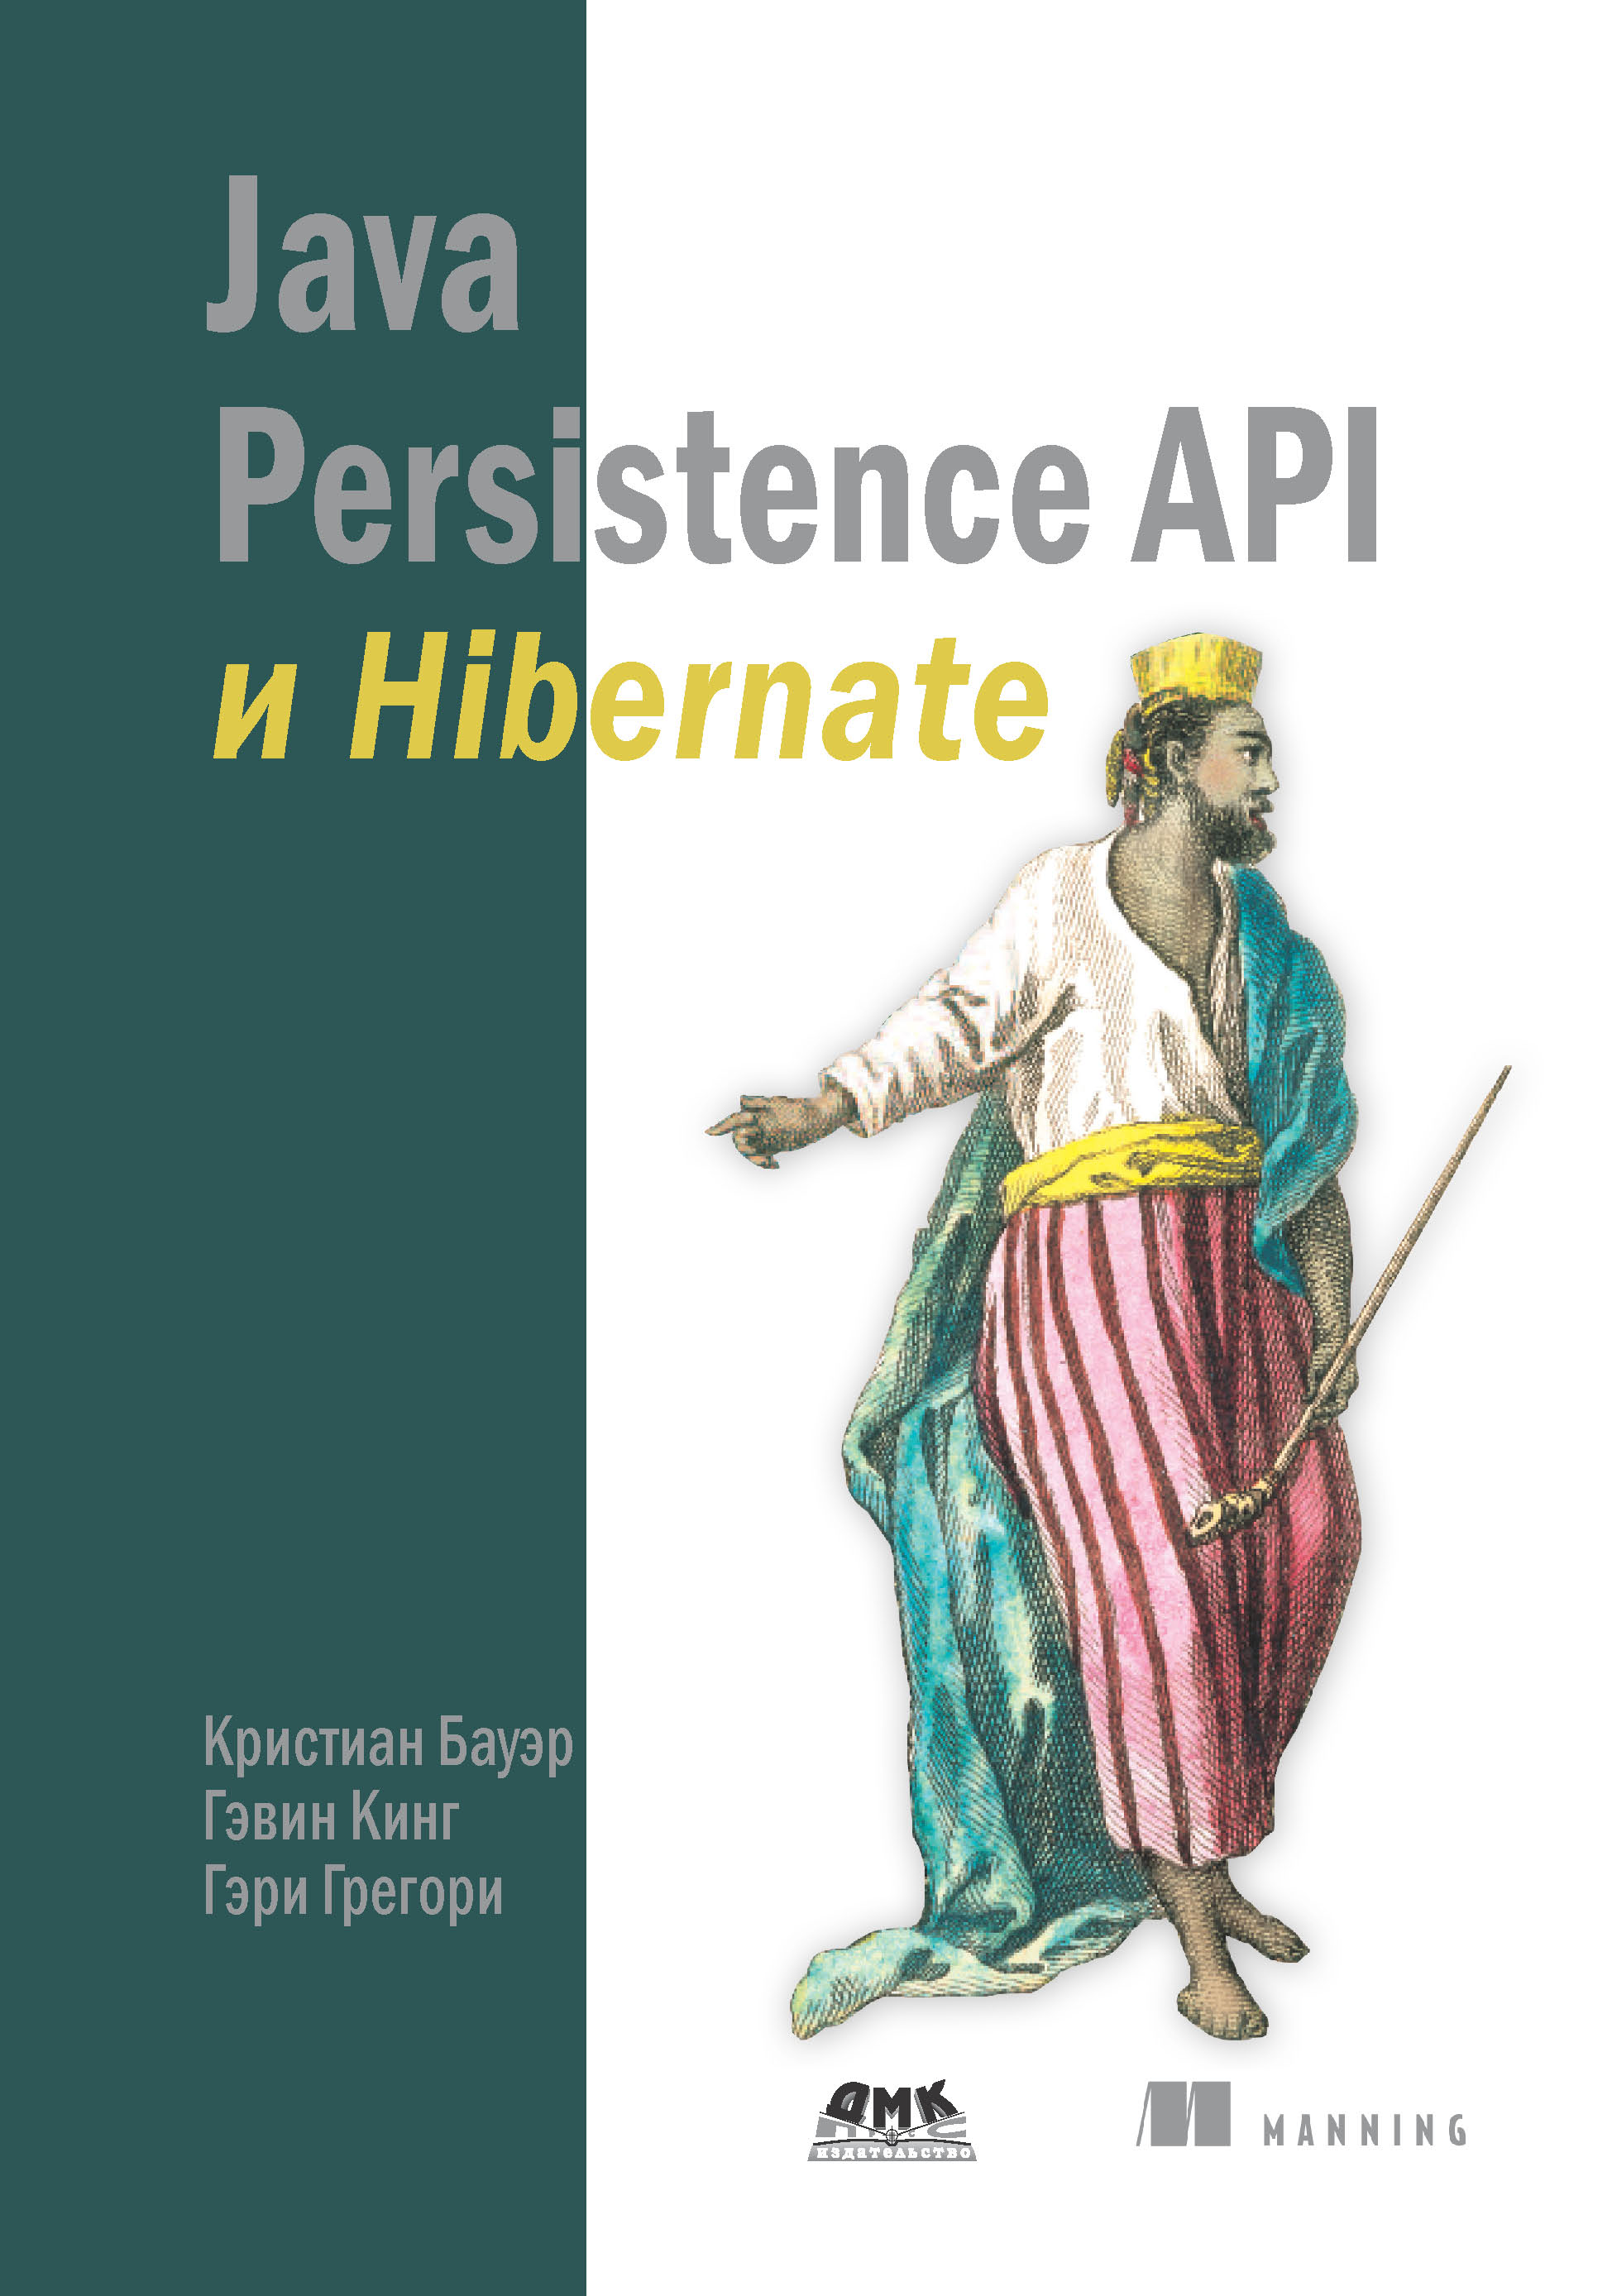 Книга  Java Persistence API и Hibernate созданная Гэри Грегори, Кристиан Бауэр, Гэвин Кинг, Д. А. Зинкевич может относится к жанру базы данных, зарубежная компьютерная литература, программирование. Стоимость электронной книги Java Persistence API и Hibernate с идентификатором 48411103 составляет 790.00 руб.